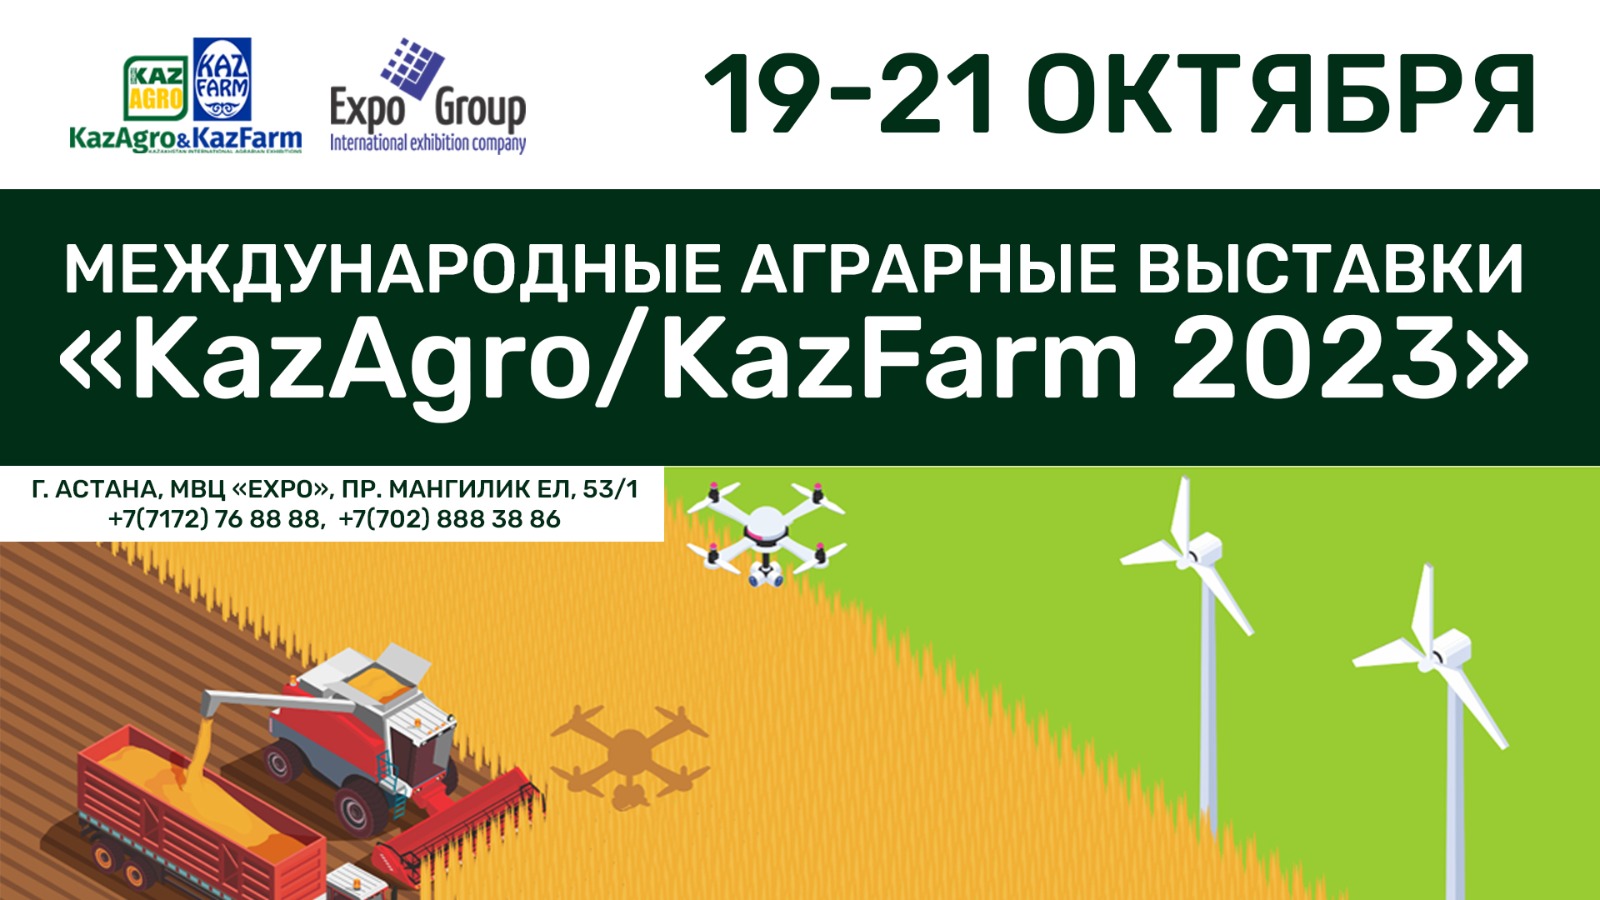 EXPO ХКО-да KazAgro/KazFarm 2023 халықаралық аграрлық көрмелері өтеді